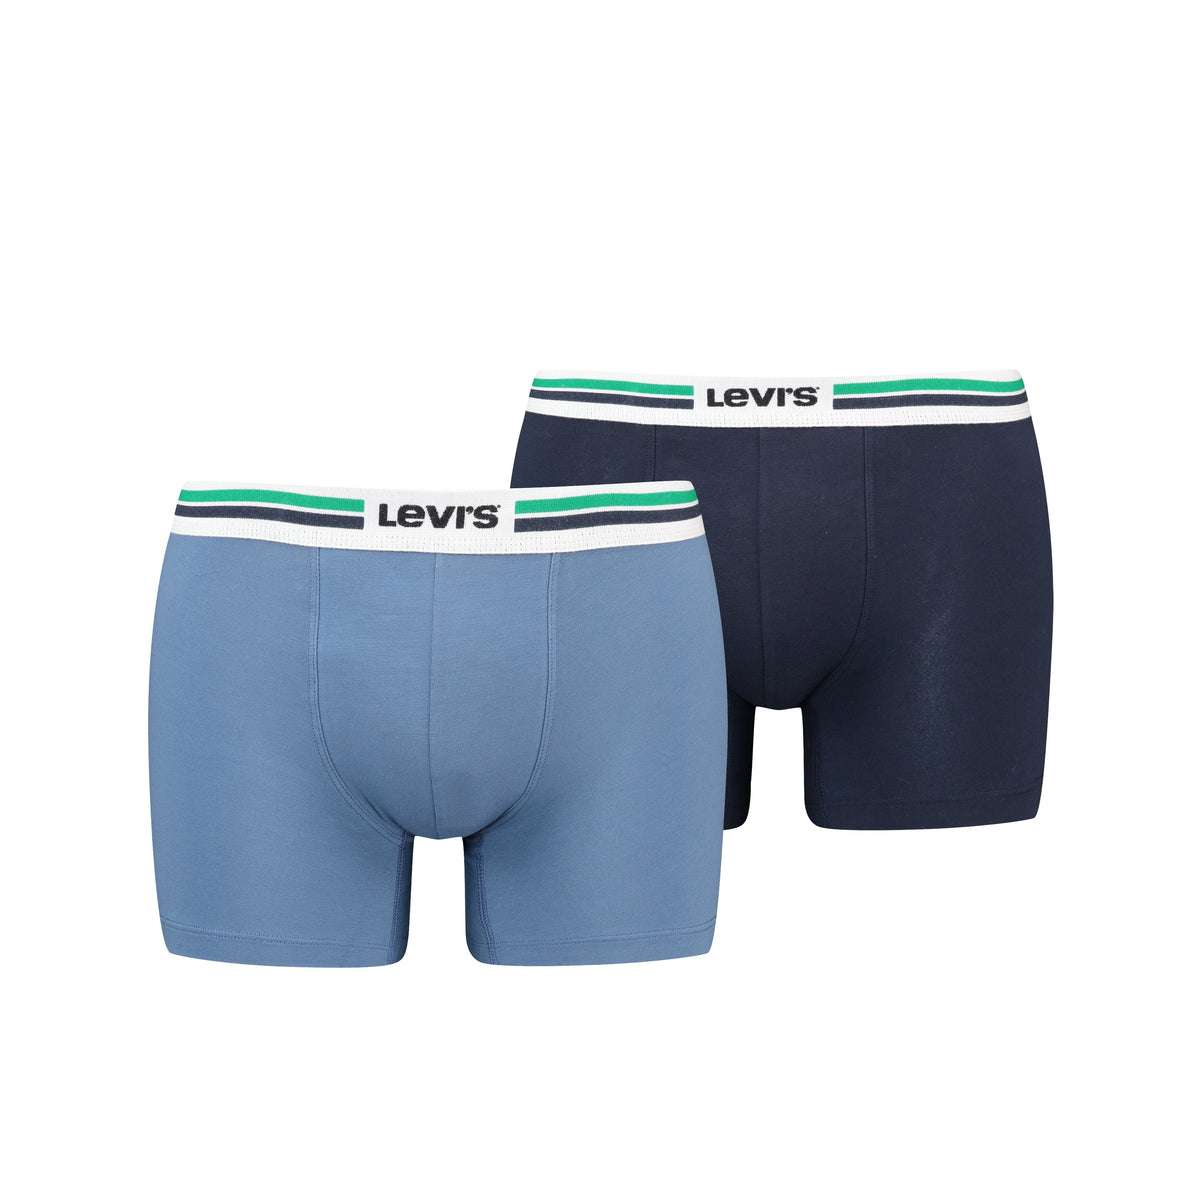 Levi's - Placed Sportswear Logo Boxer 2-pack - 701222843 - 002 Blue Boxershort Levis 